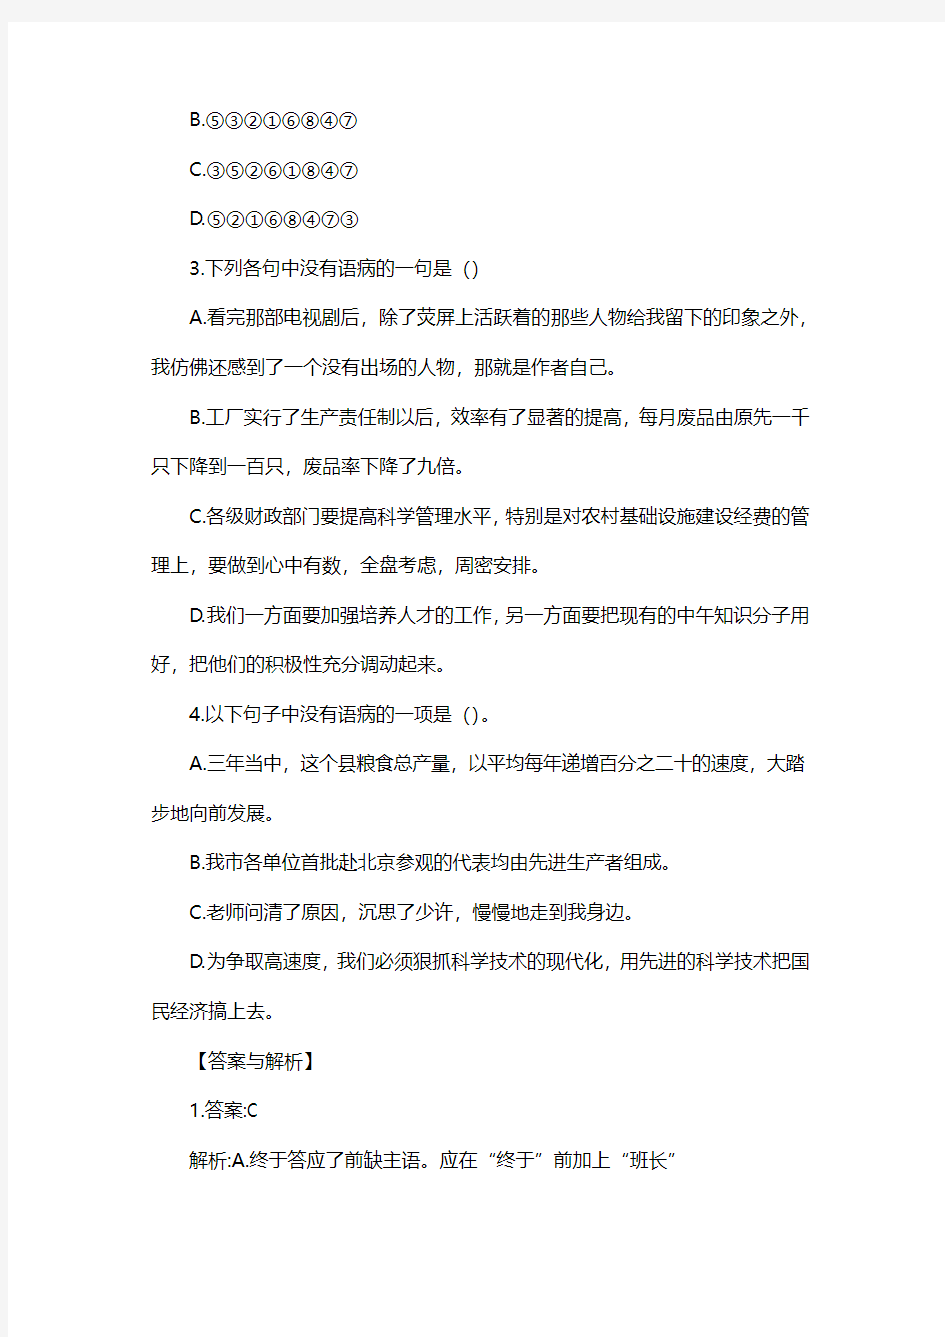 2020年上海公务员考试行测考前习题：语句表达